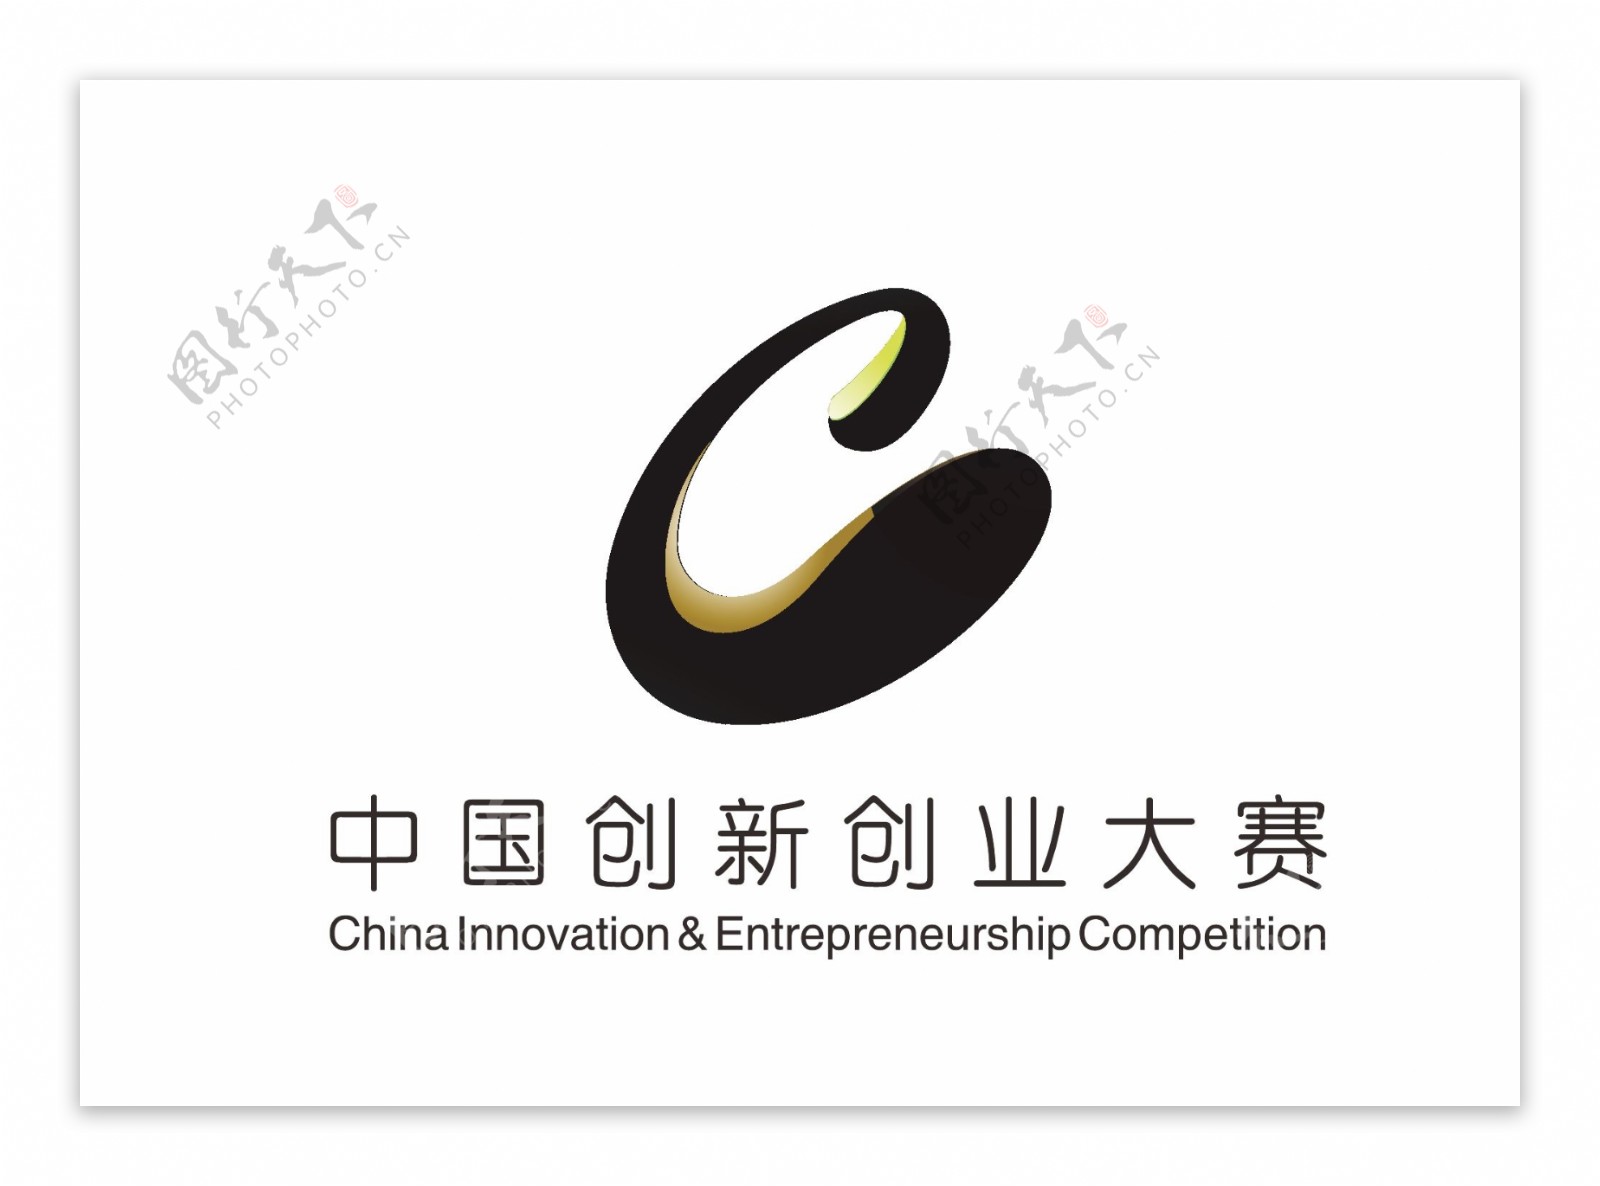 中国创新创业大赛LOGO